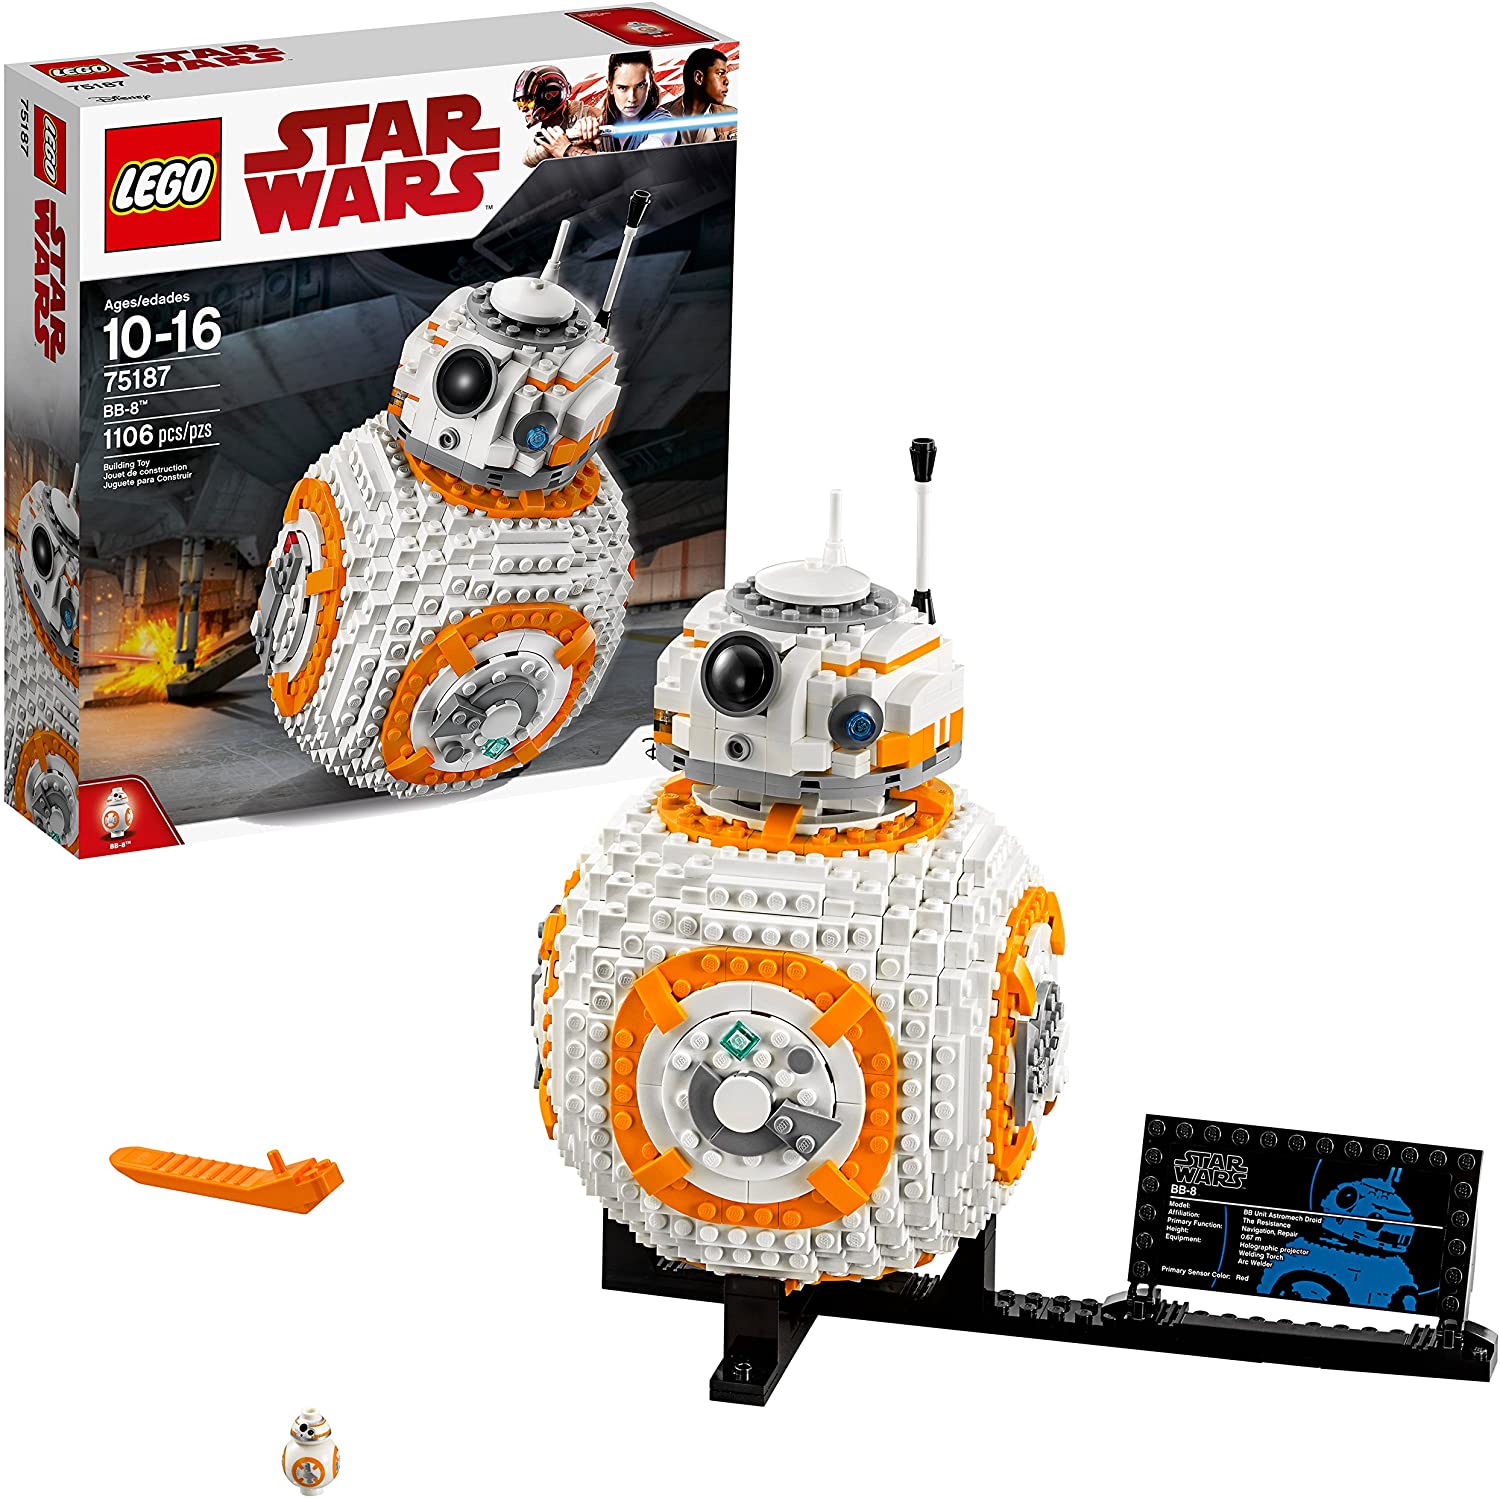 LEGO Star Wars VIII BB-8 75187 Kit de construcción (1106 piezas)